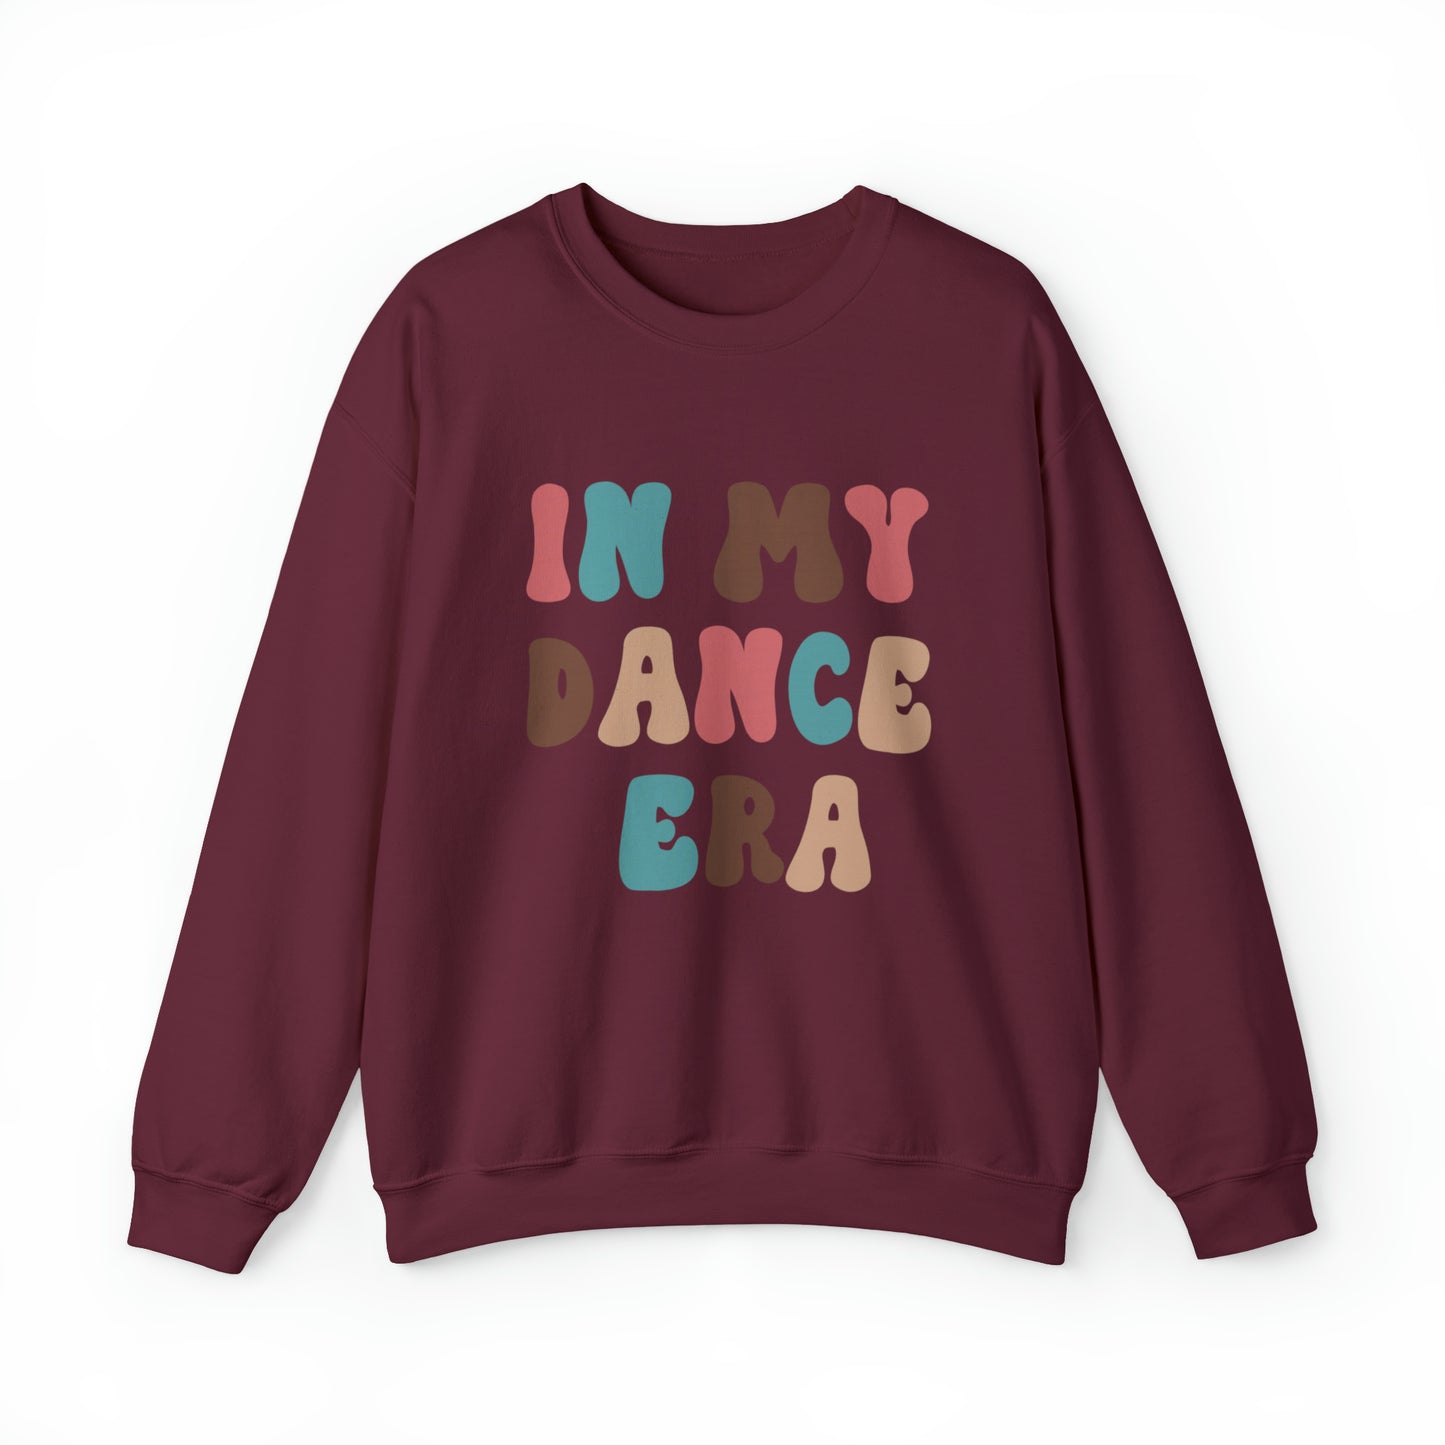 In My Dance Era Crewneck Sweatshirt